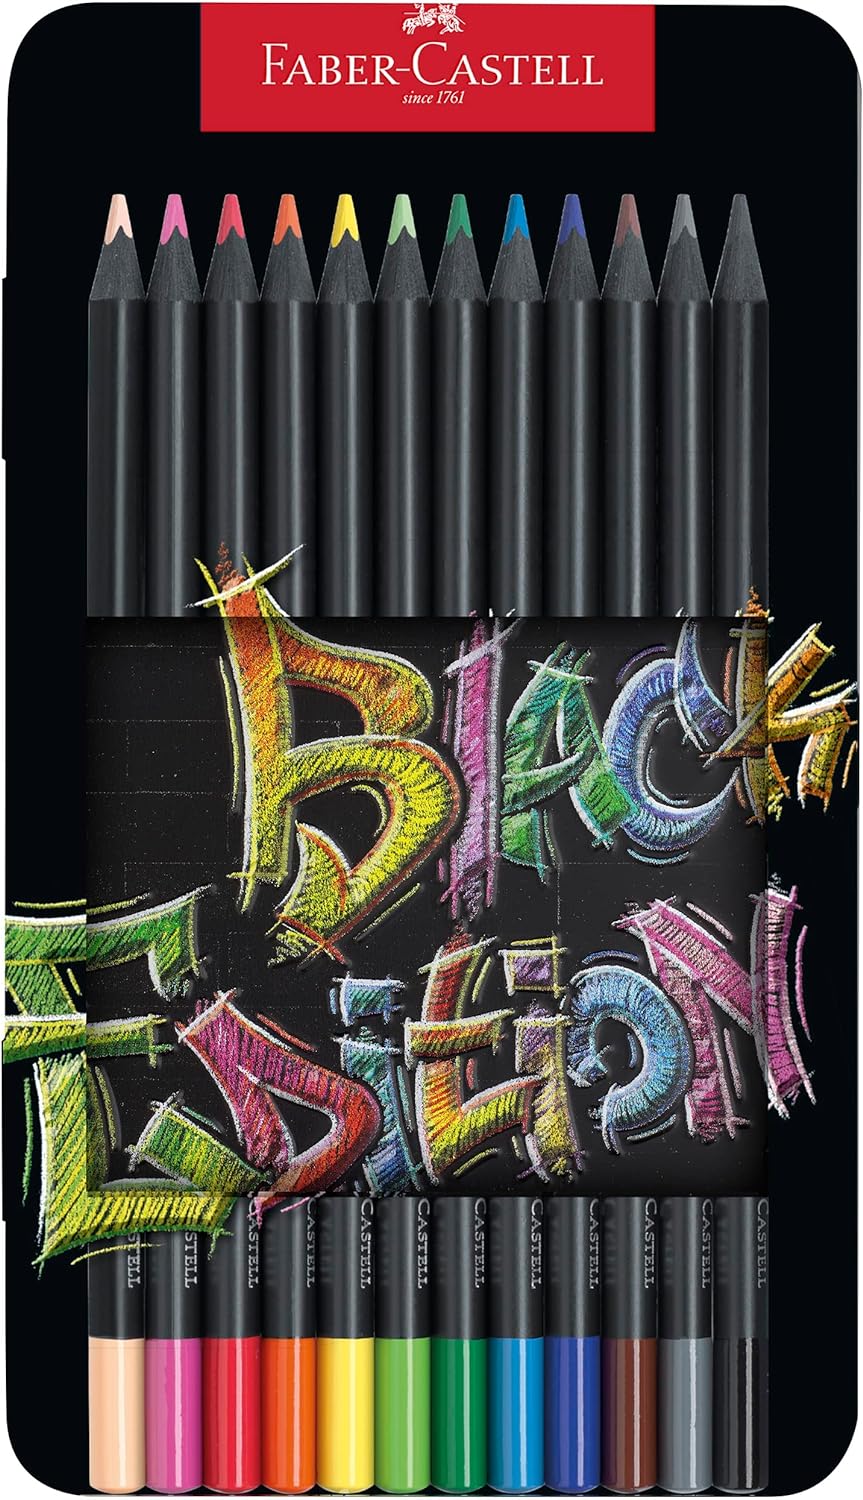 Faber-Castell Black Edition Boîte Métal de 12 Crayons de Couleur - Mine Super Douce - Bois Noir - Idéal pour Dessiner sur Papier Clair, Foncé et Coloré - Couleurs Assorties